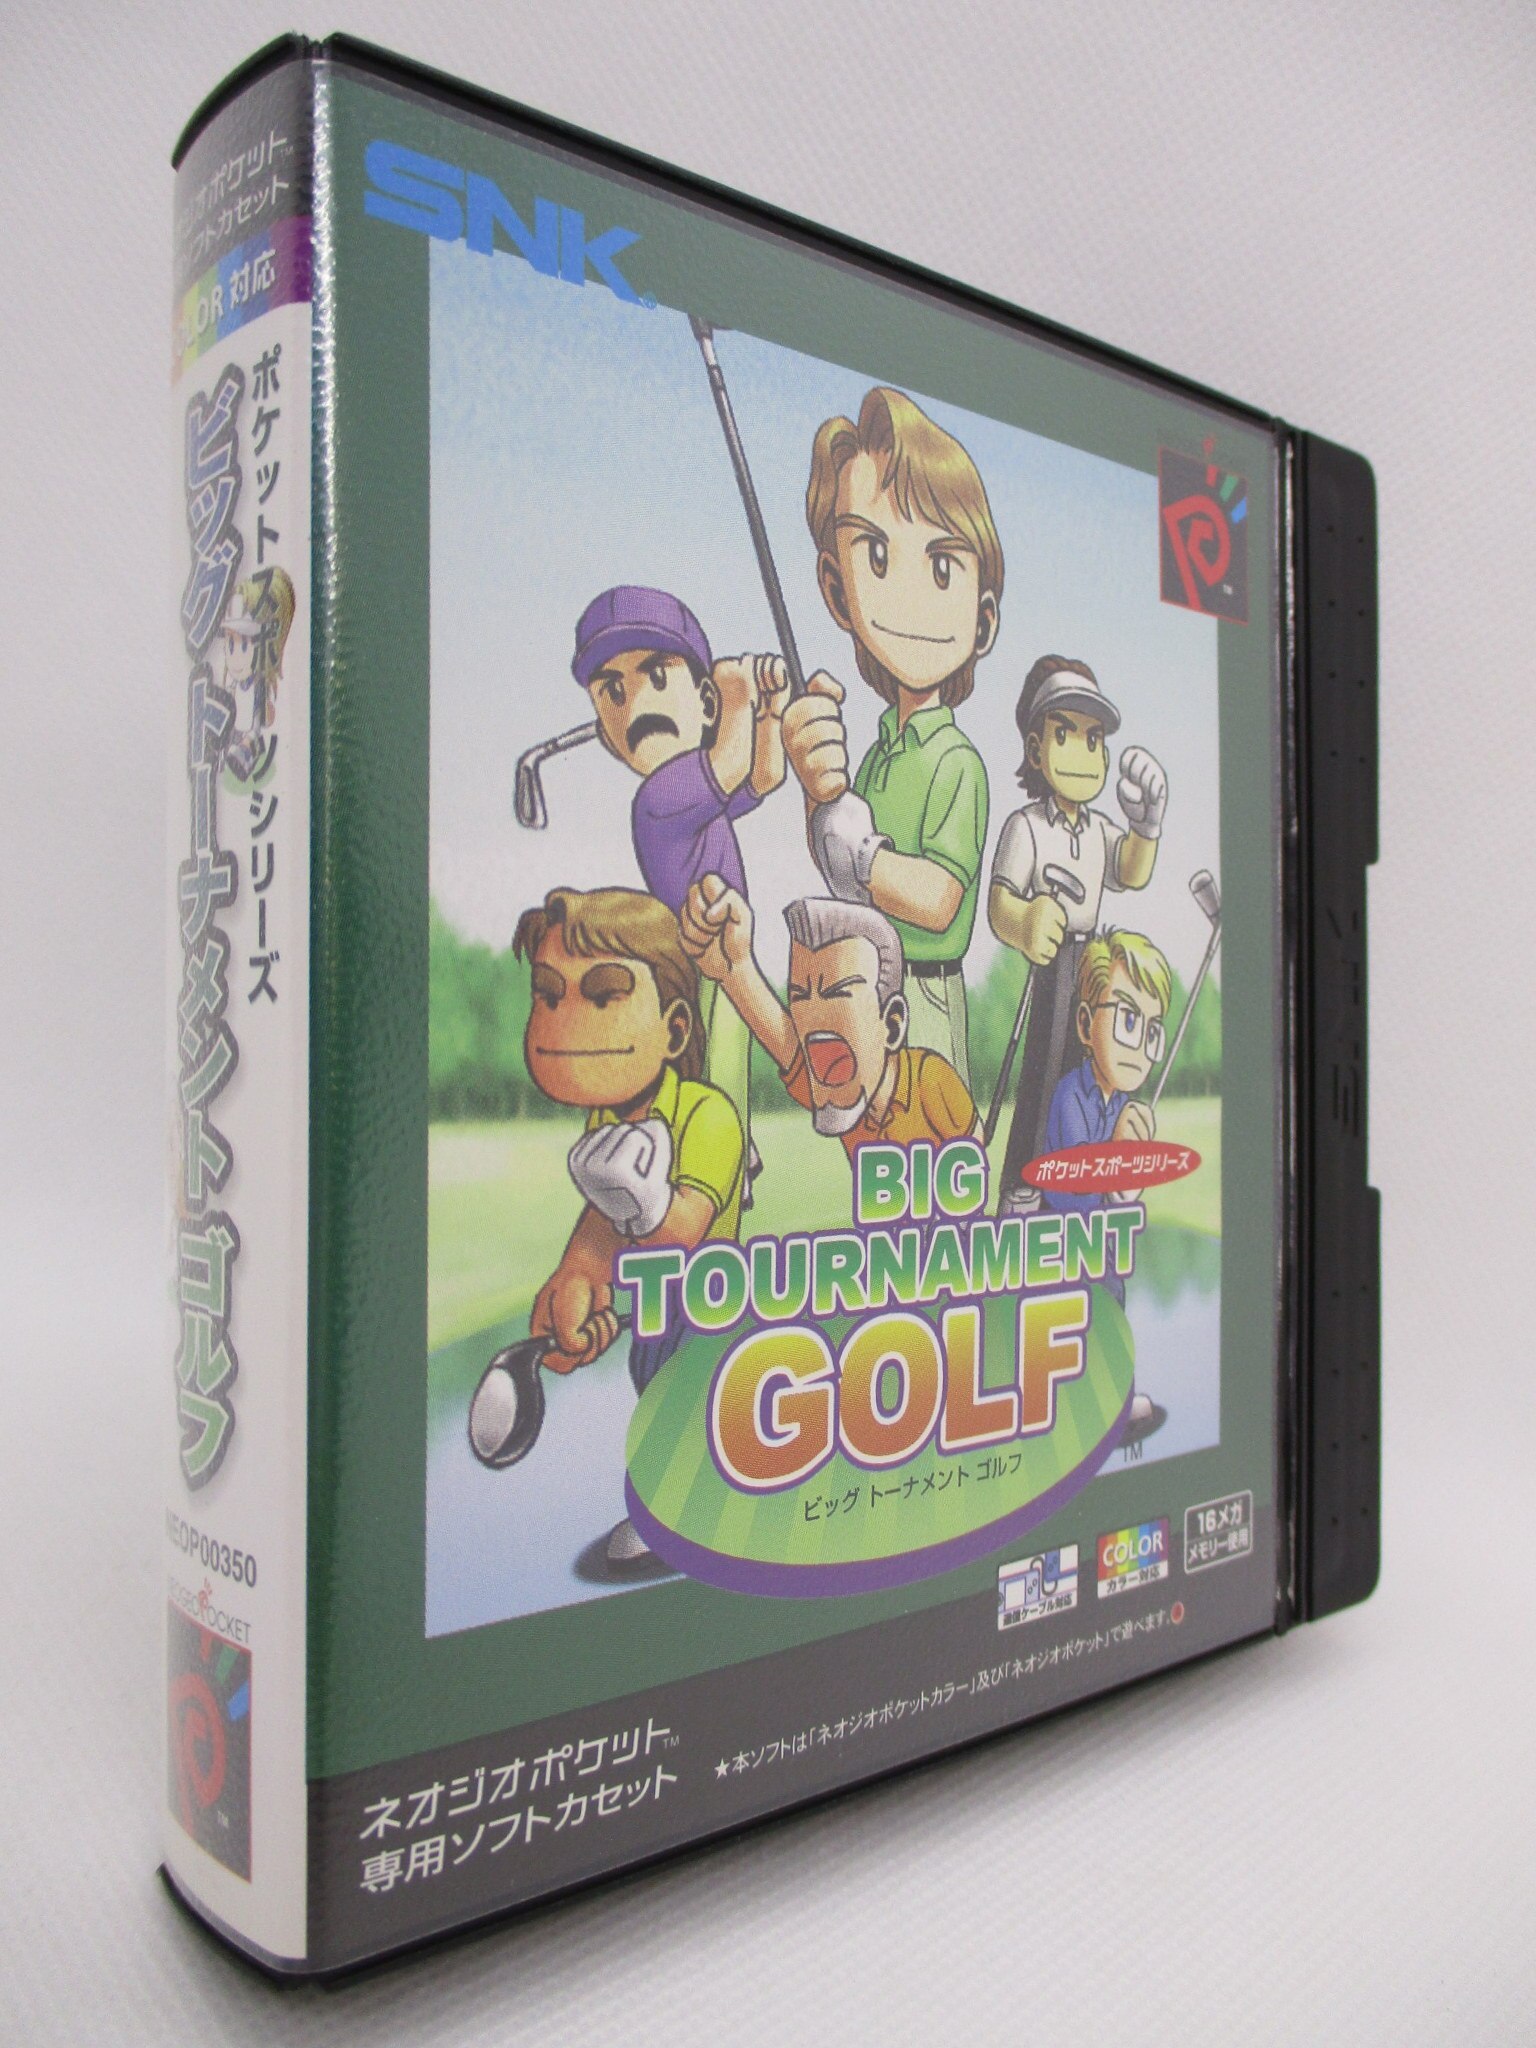 NGPC体験版ソフト ビッグトーナメントゴルフ 体験版 ネオジオ ポケット 